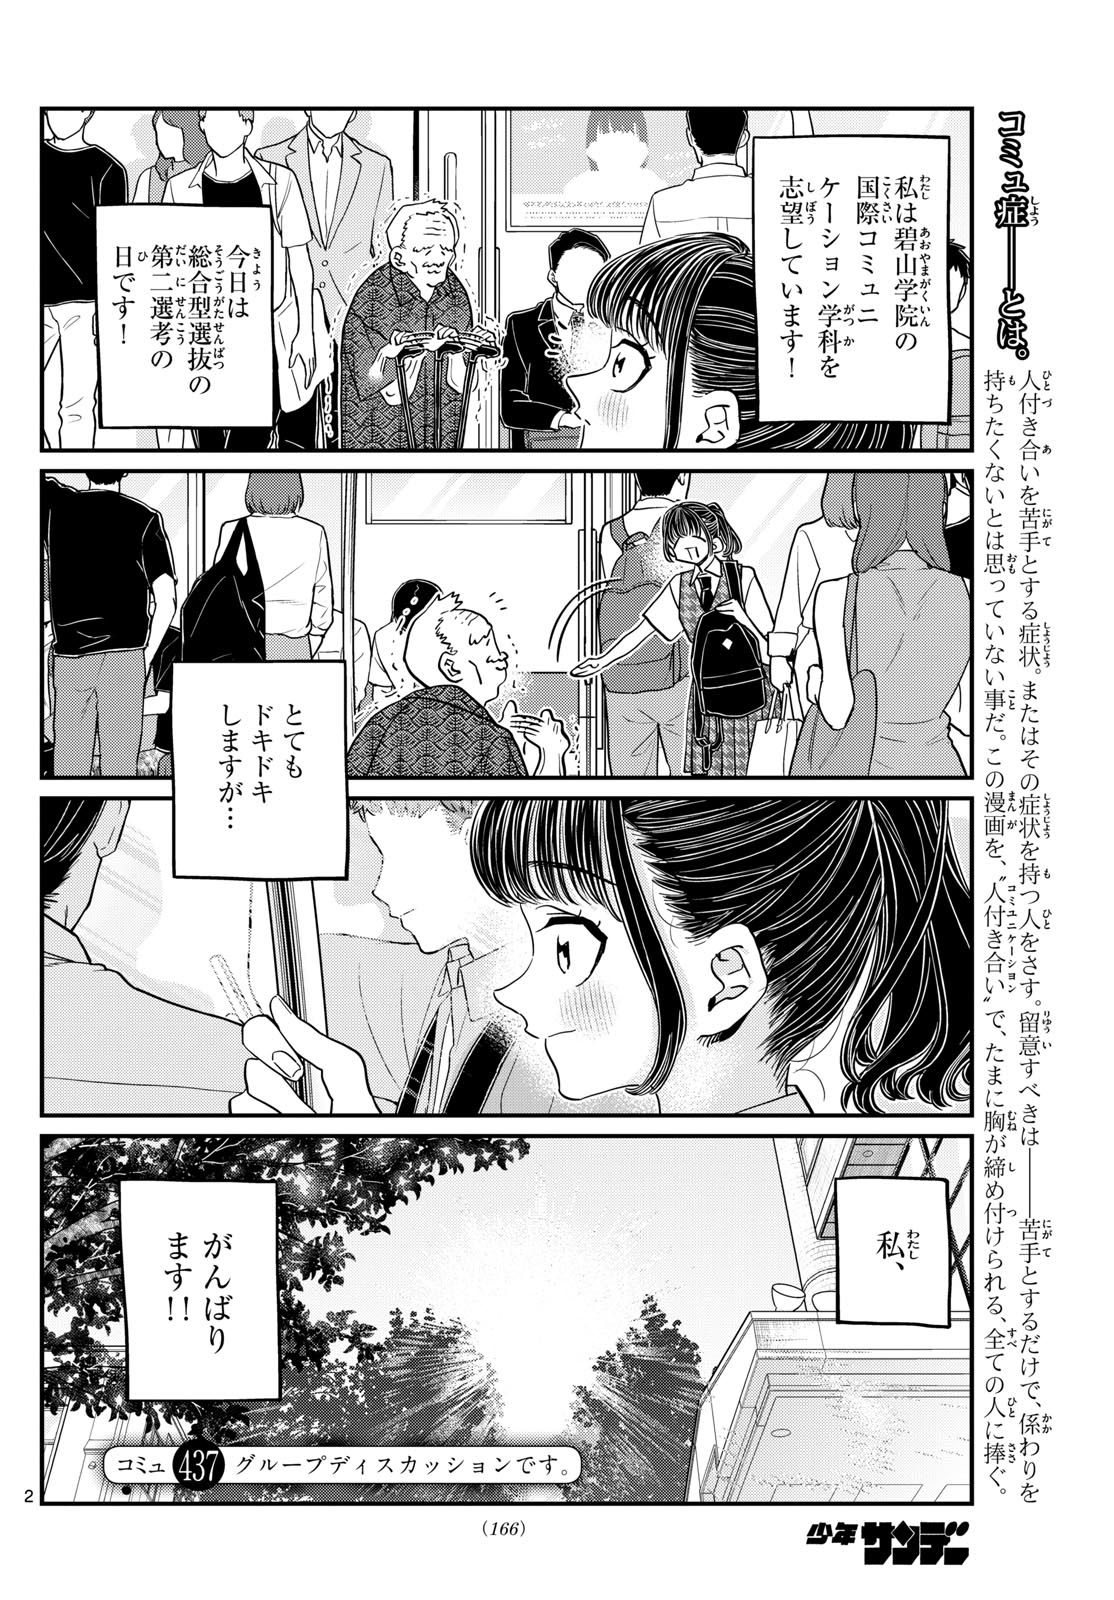 Komi-san wa Komyushou Desu - Chapter 437 - Page 2